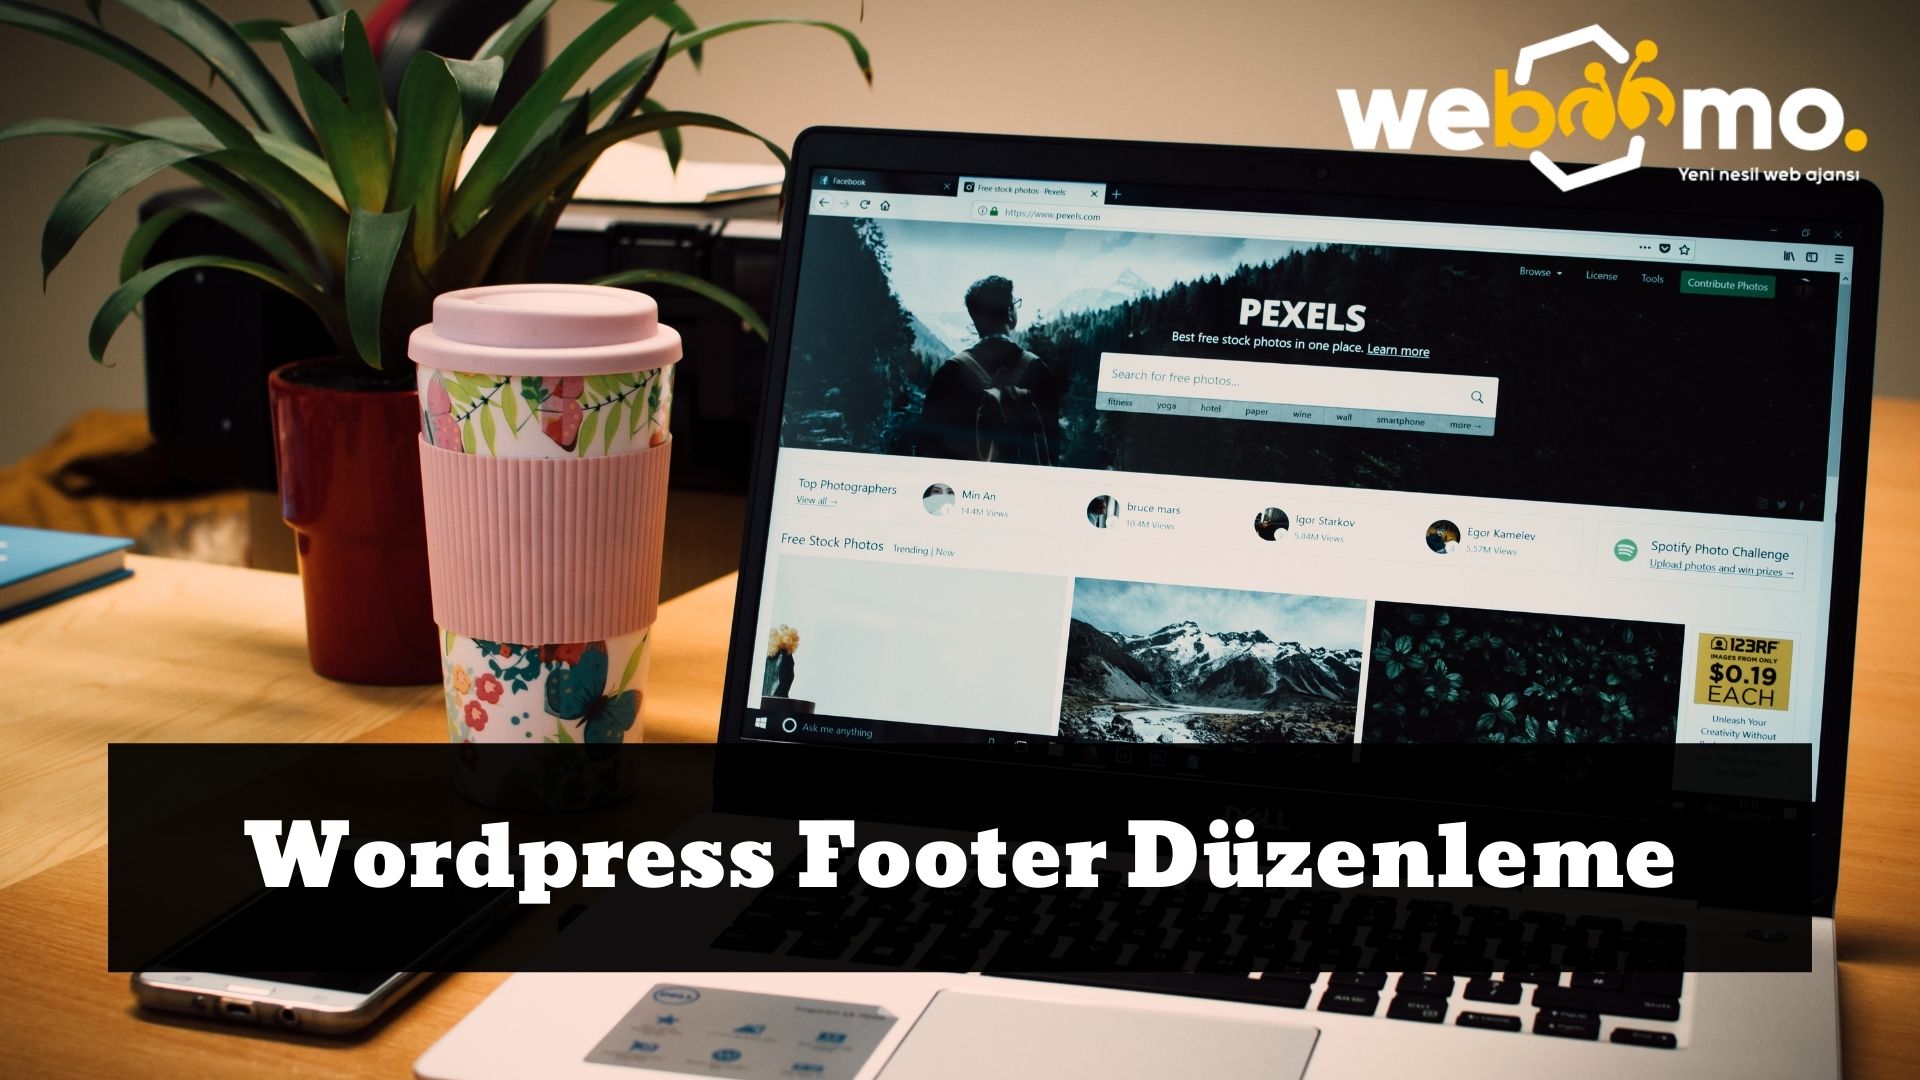 Wordpress Footer Duzenleme